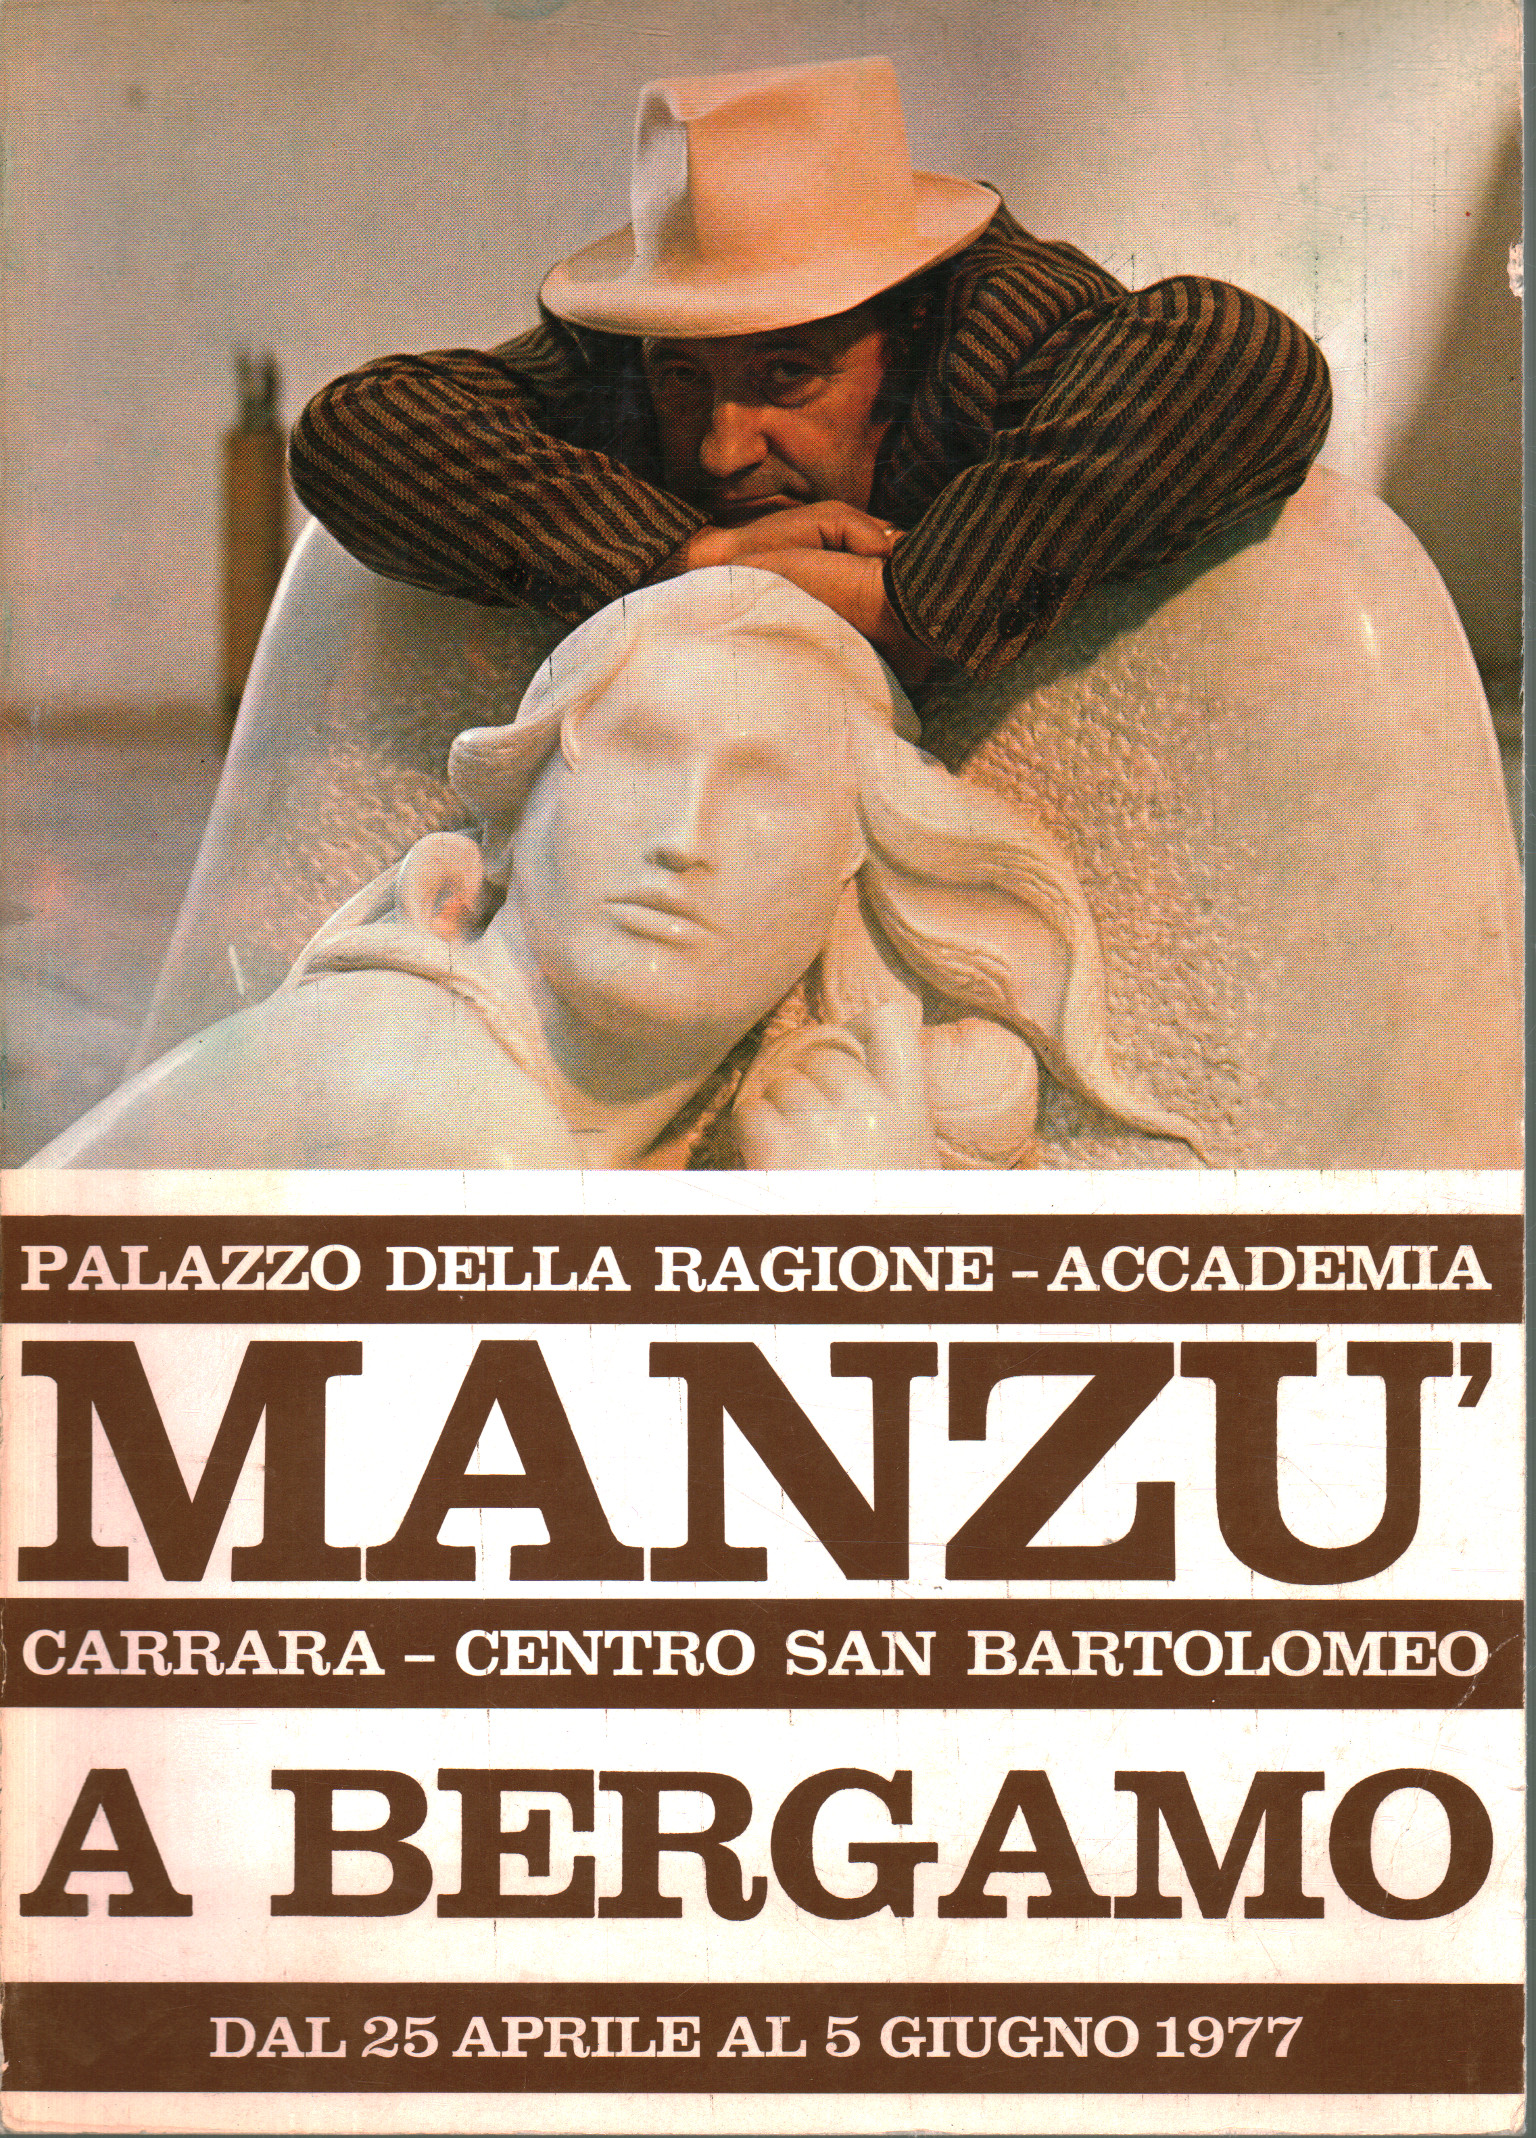 Manzù in Bergamo, A.A.V.V.